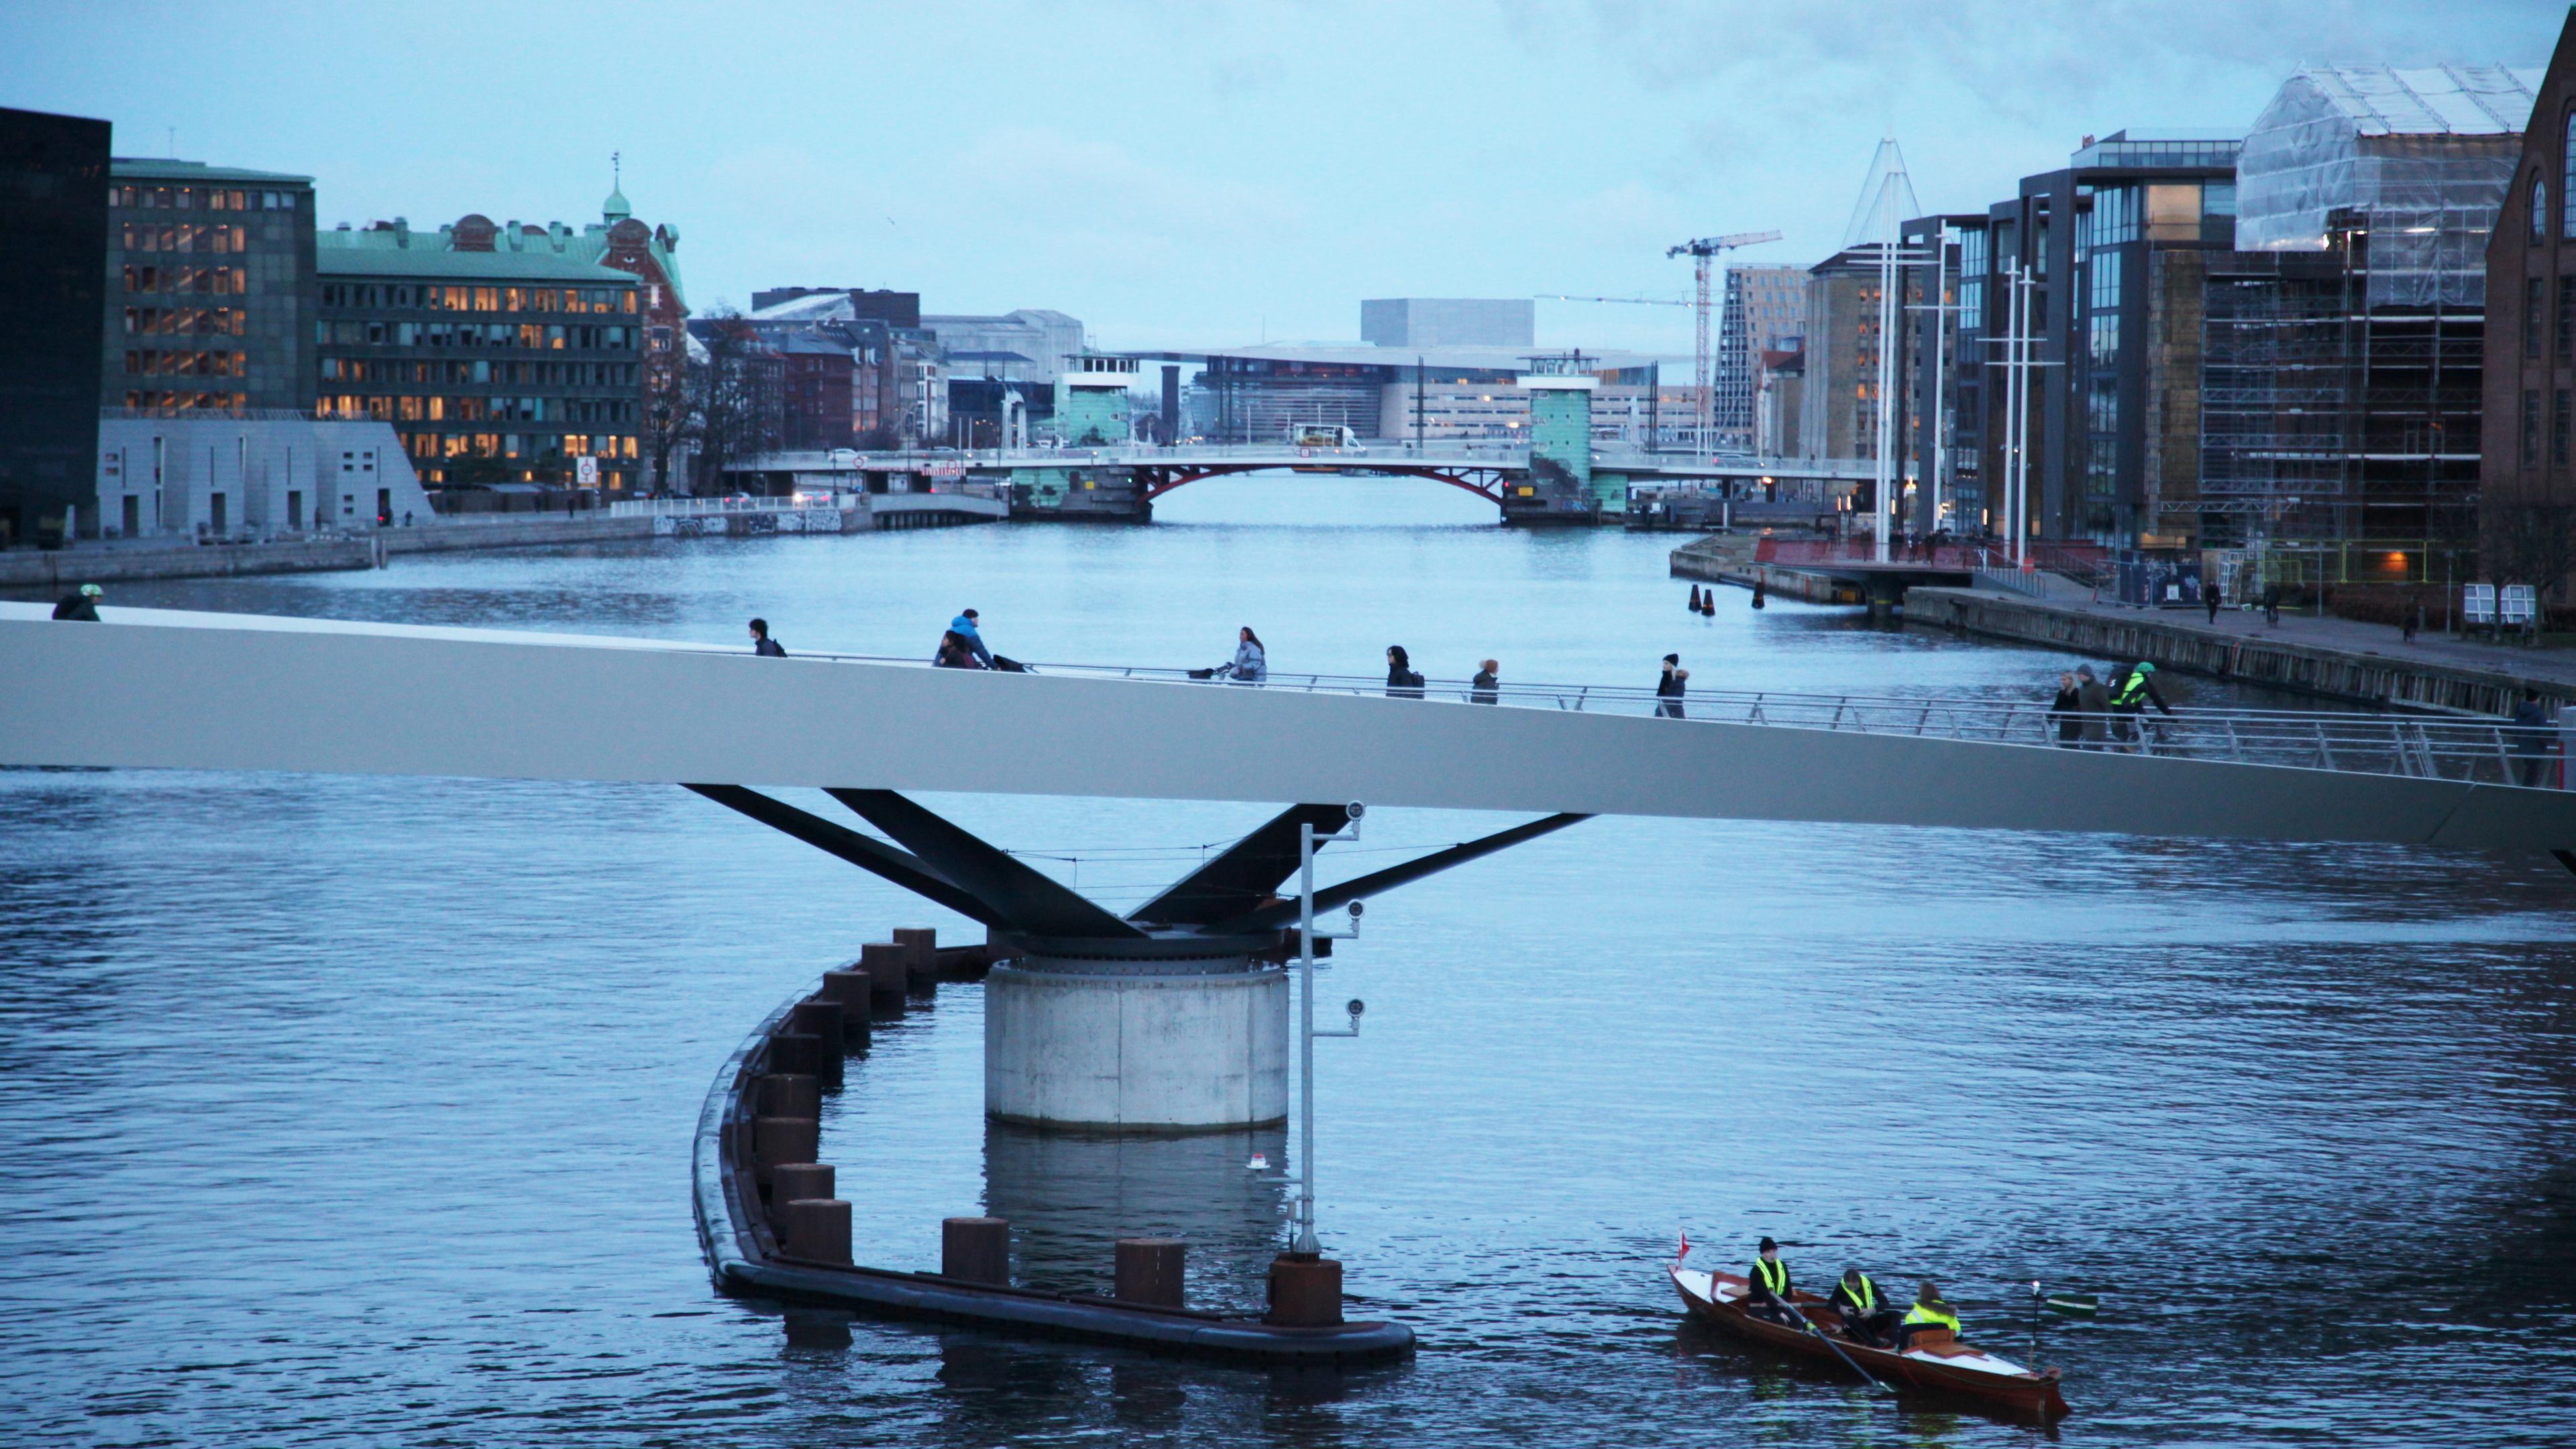 Dänemark, Kopenhagen: Radfahrer fahren über die Lille Langebro im Zentrum von Kopenhagen, während ein Ruderboot unter der Brücke hindurchfährt.